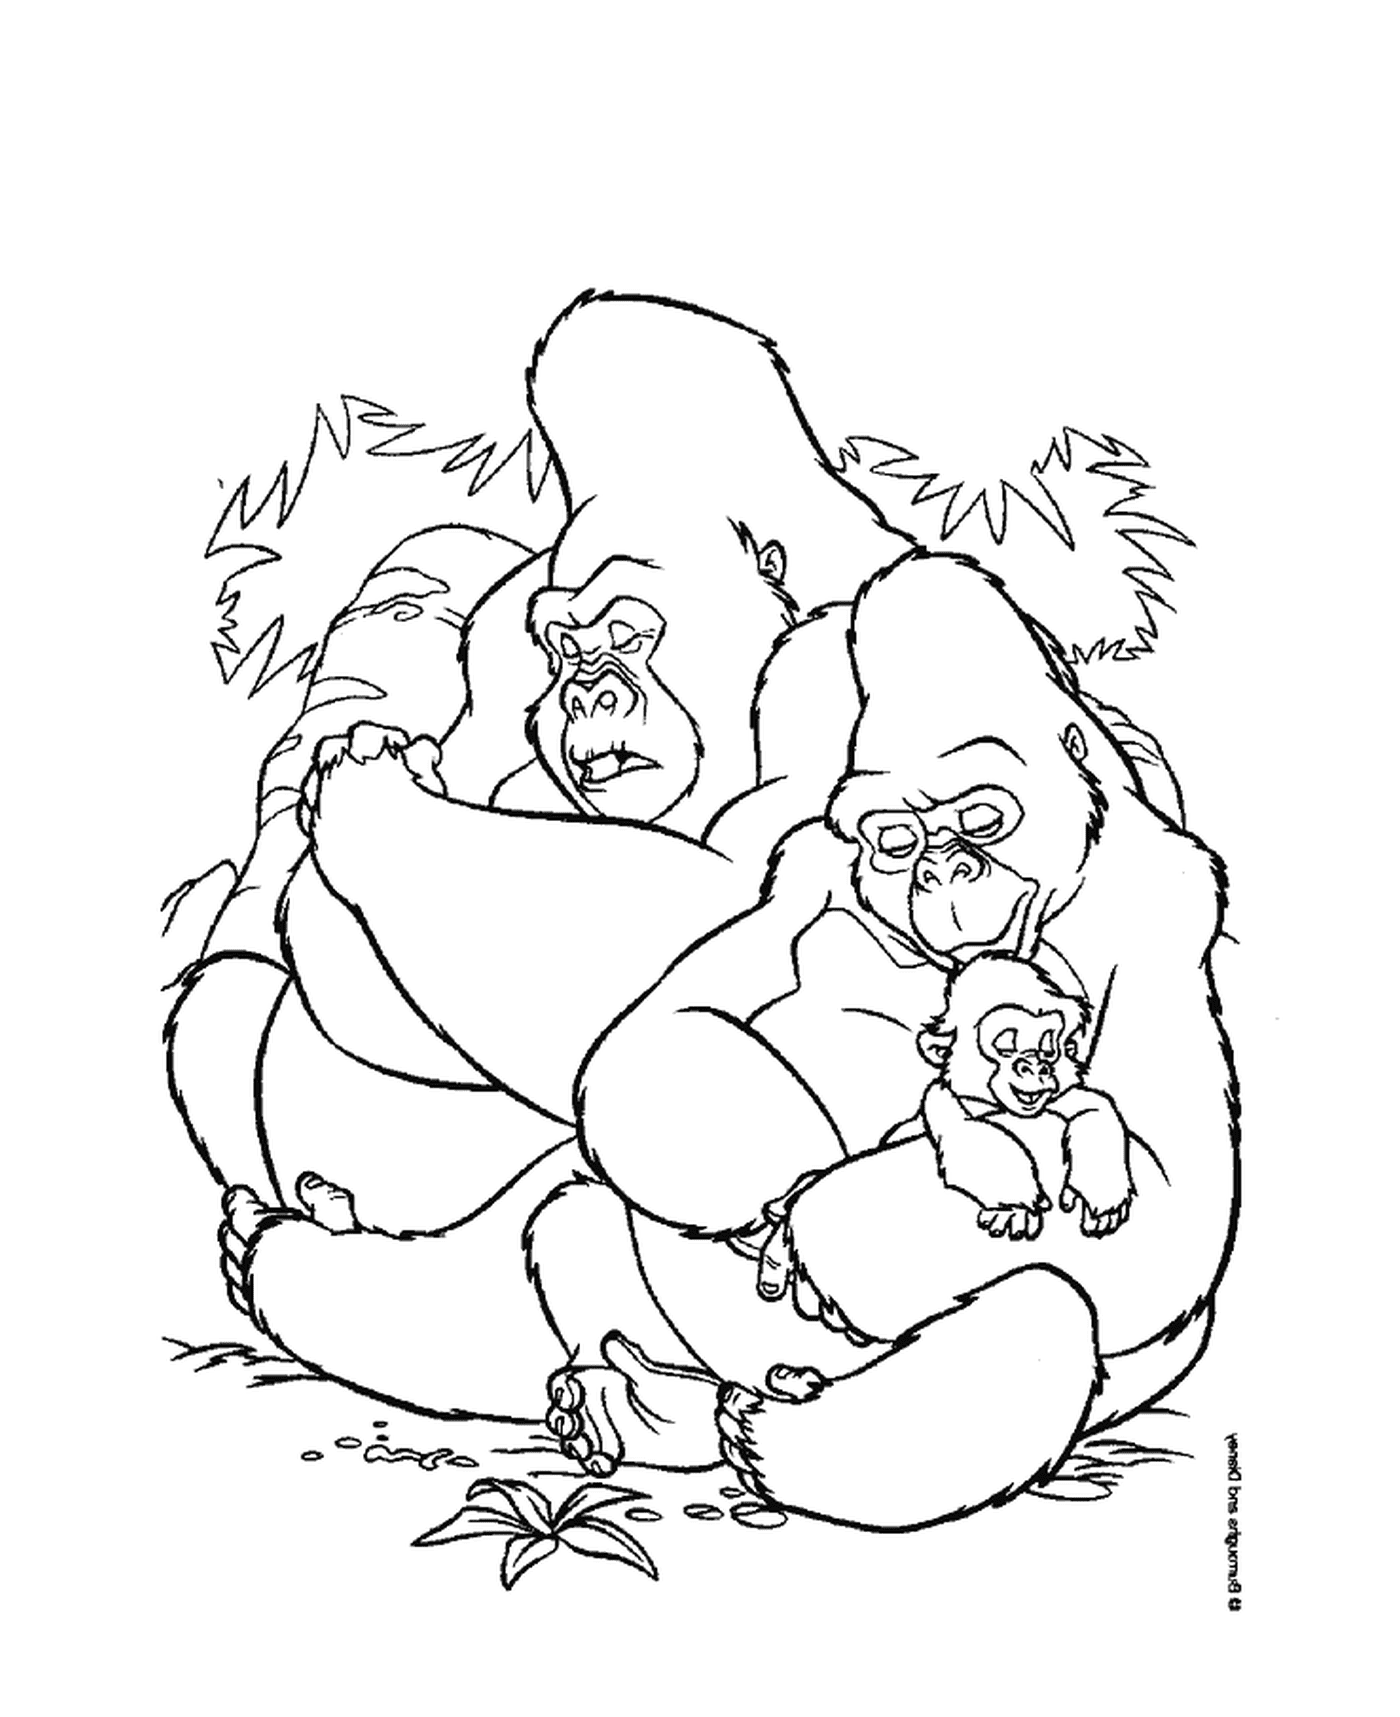  Группа горилл сидит друг на друга 